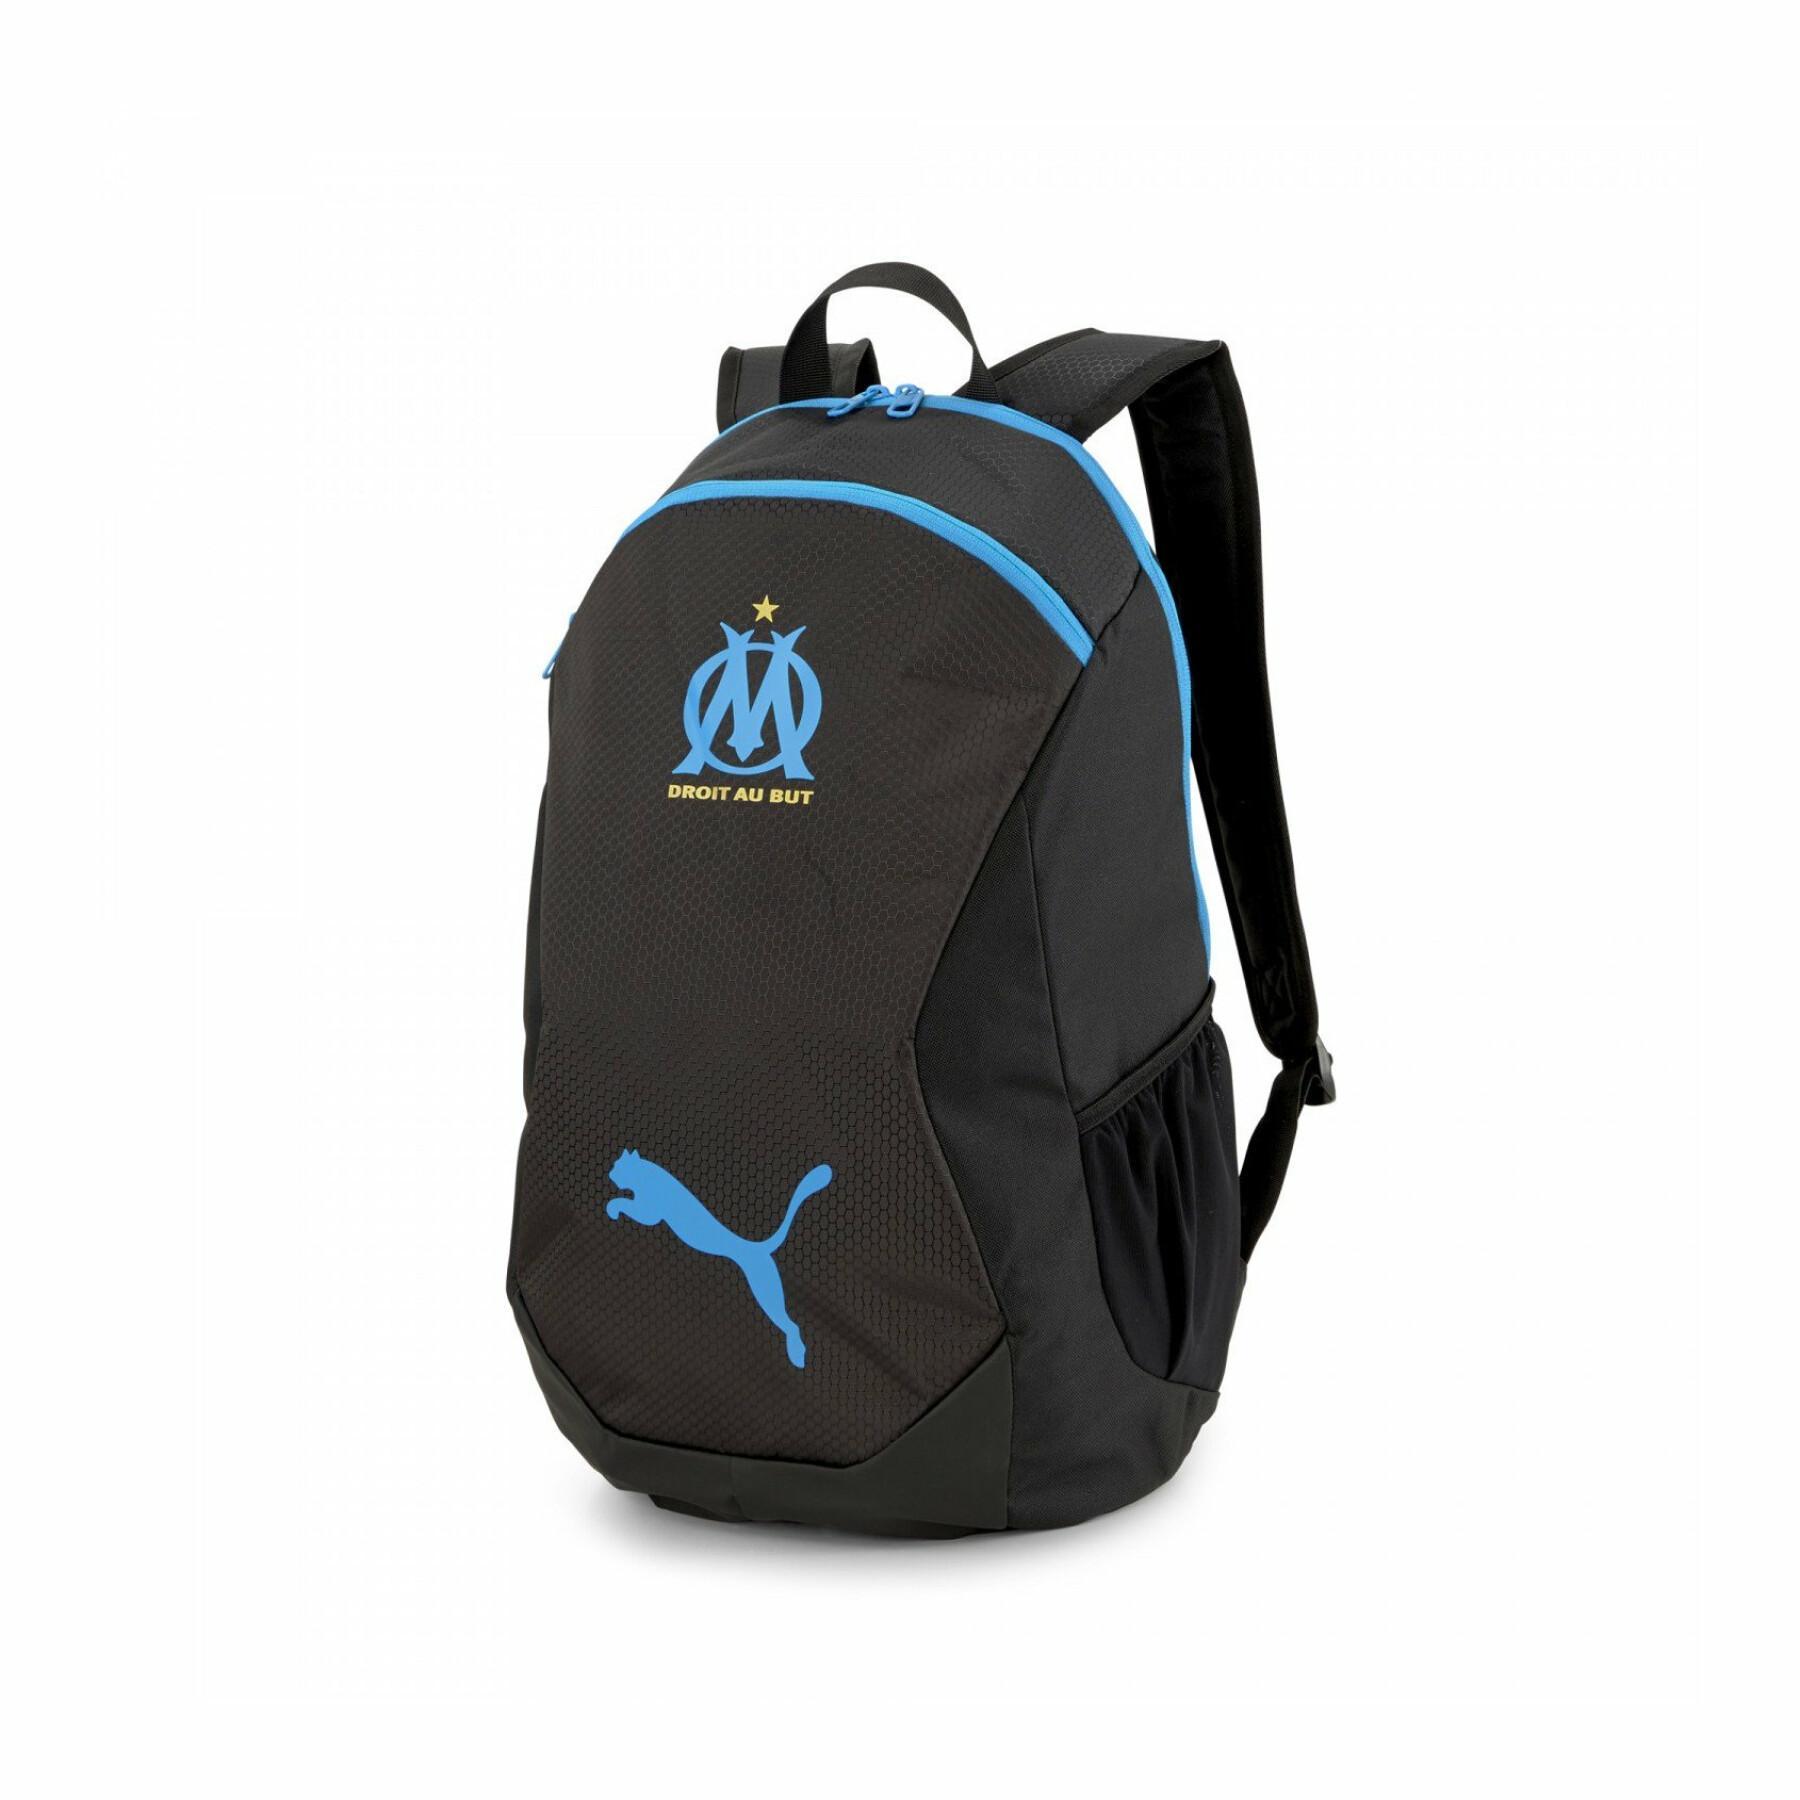 Final backpack OM 2021/22